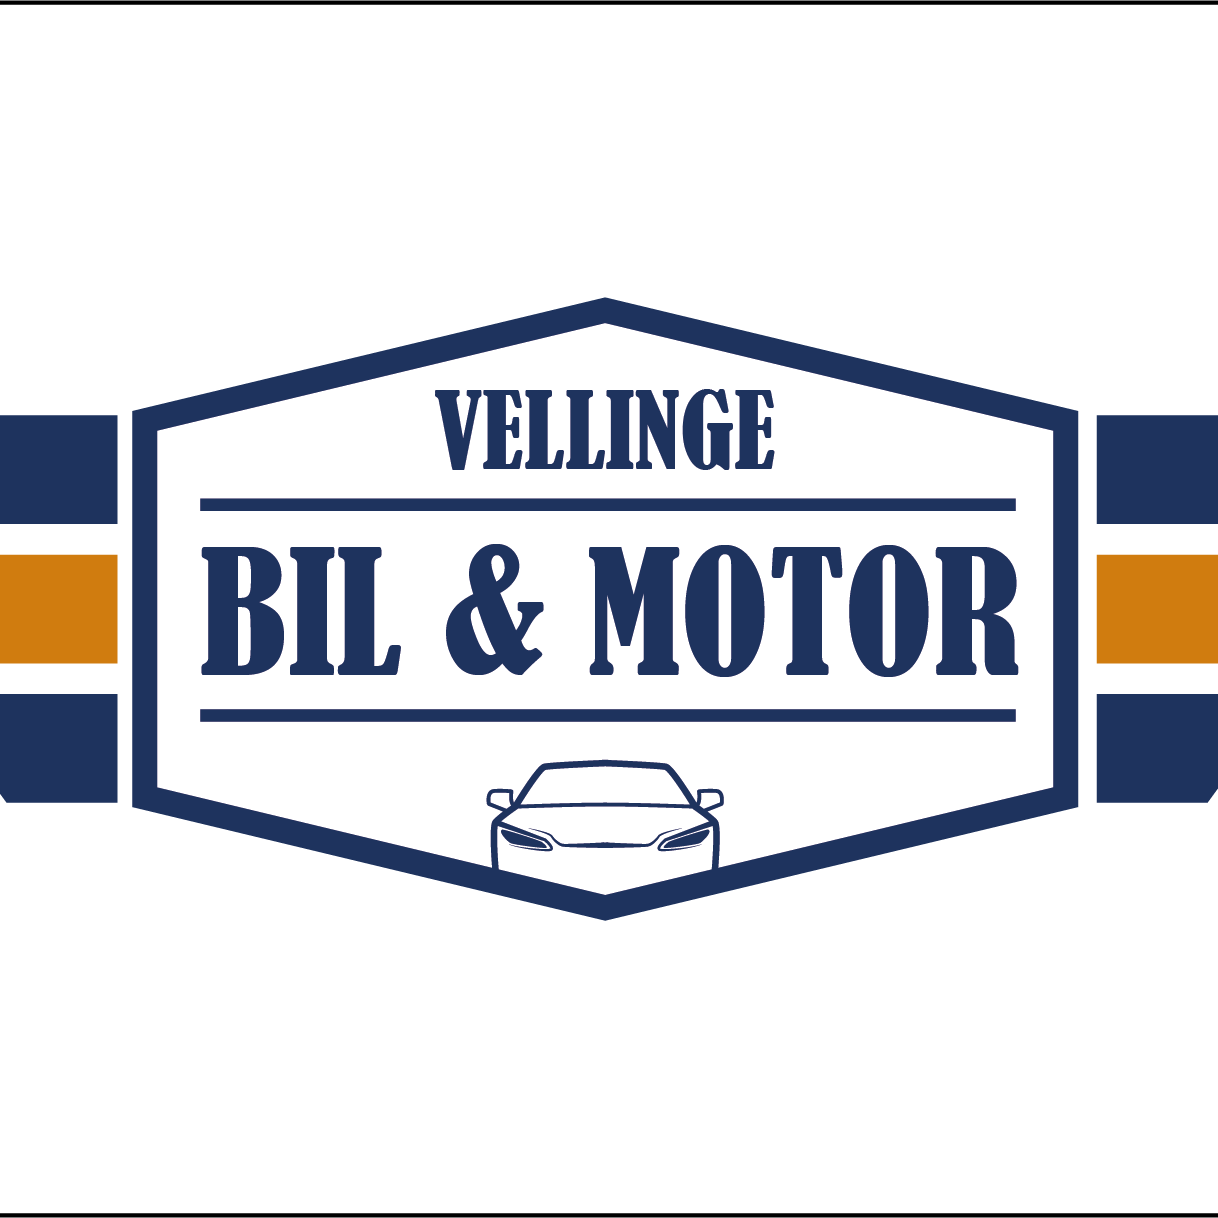 Vellinge Bil & Motor logo